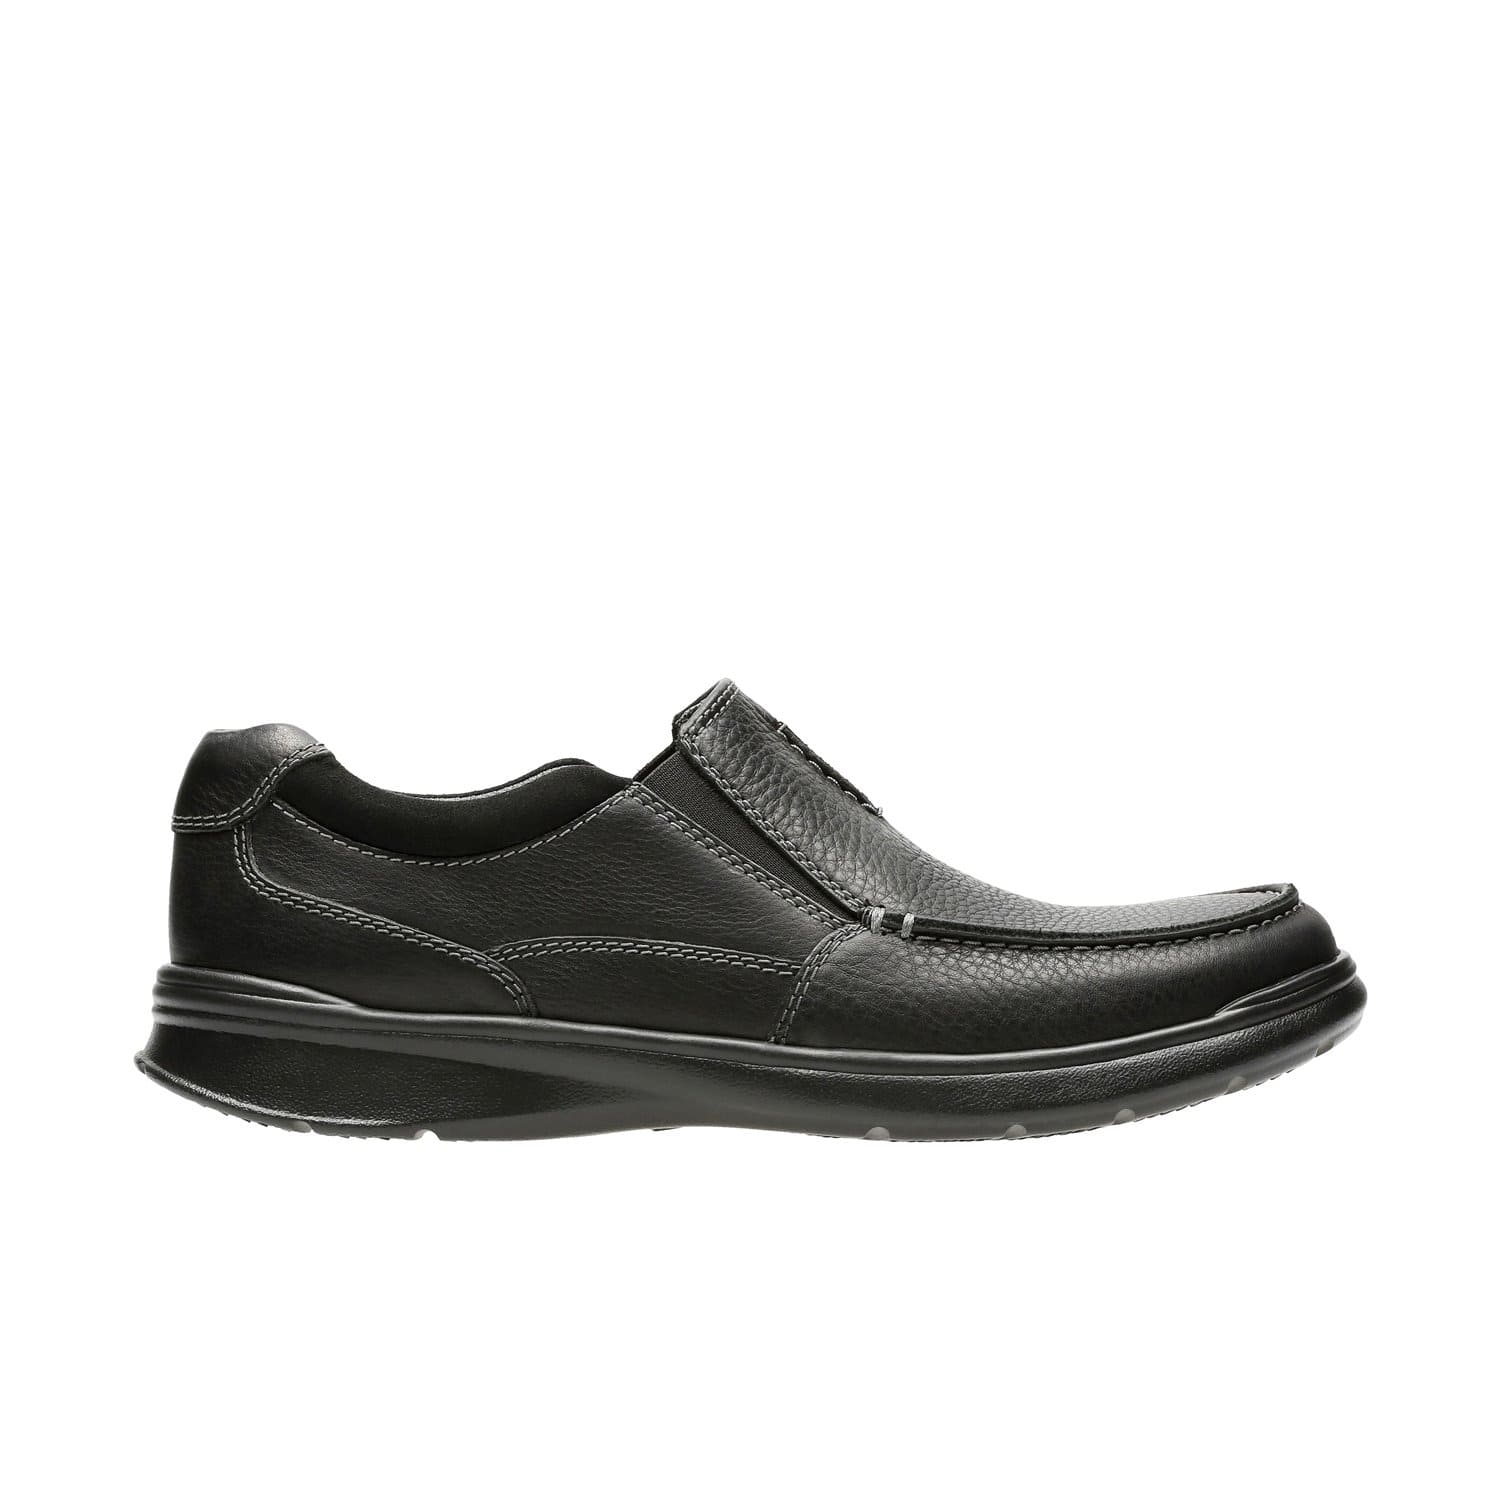 أحذية كلاركس كوتريل فري للرجال - أسود - أولي ليا - 26131593